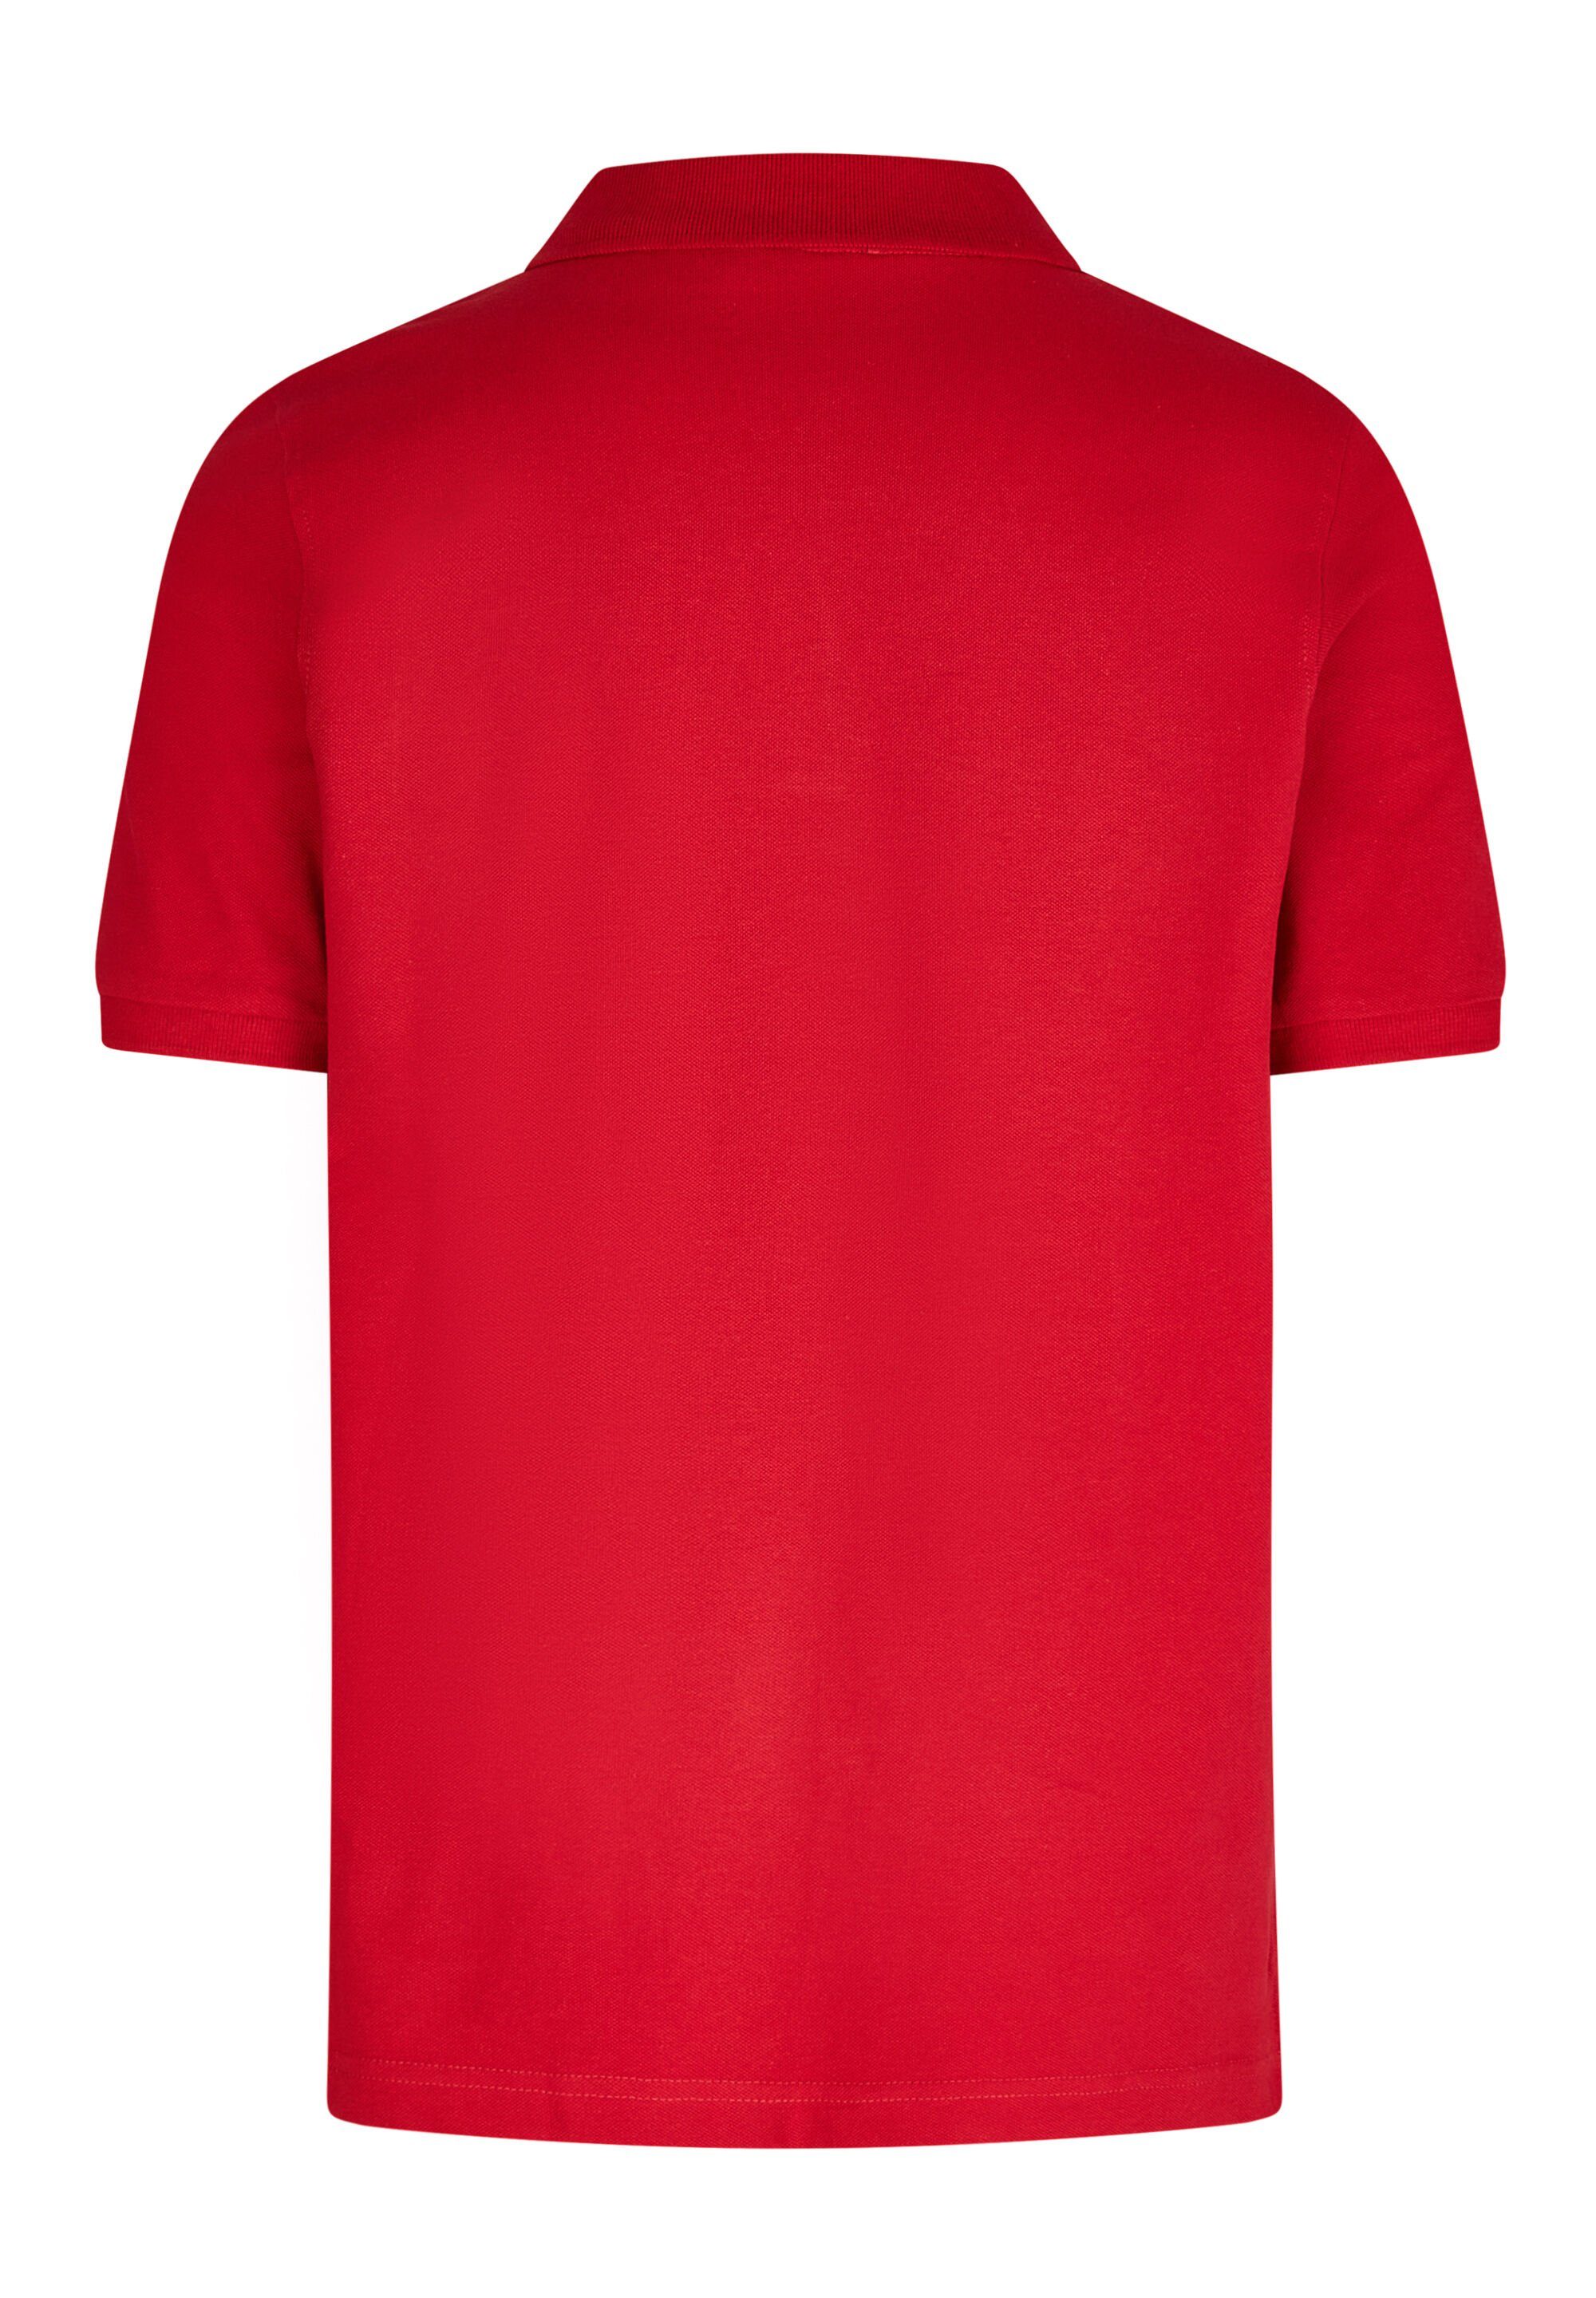 HECHTER PARIS Poloshirt red